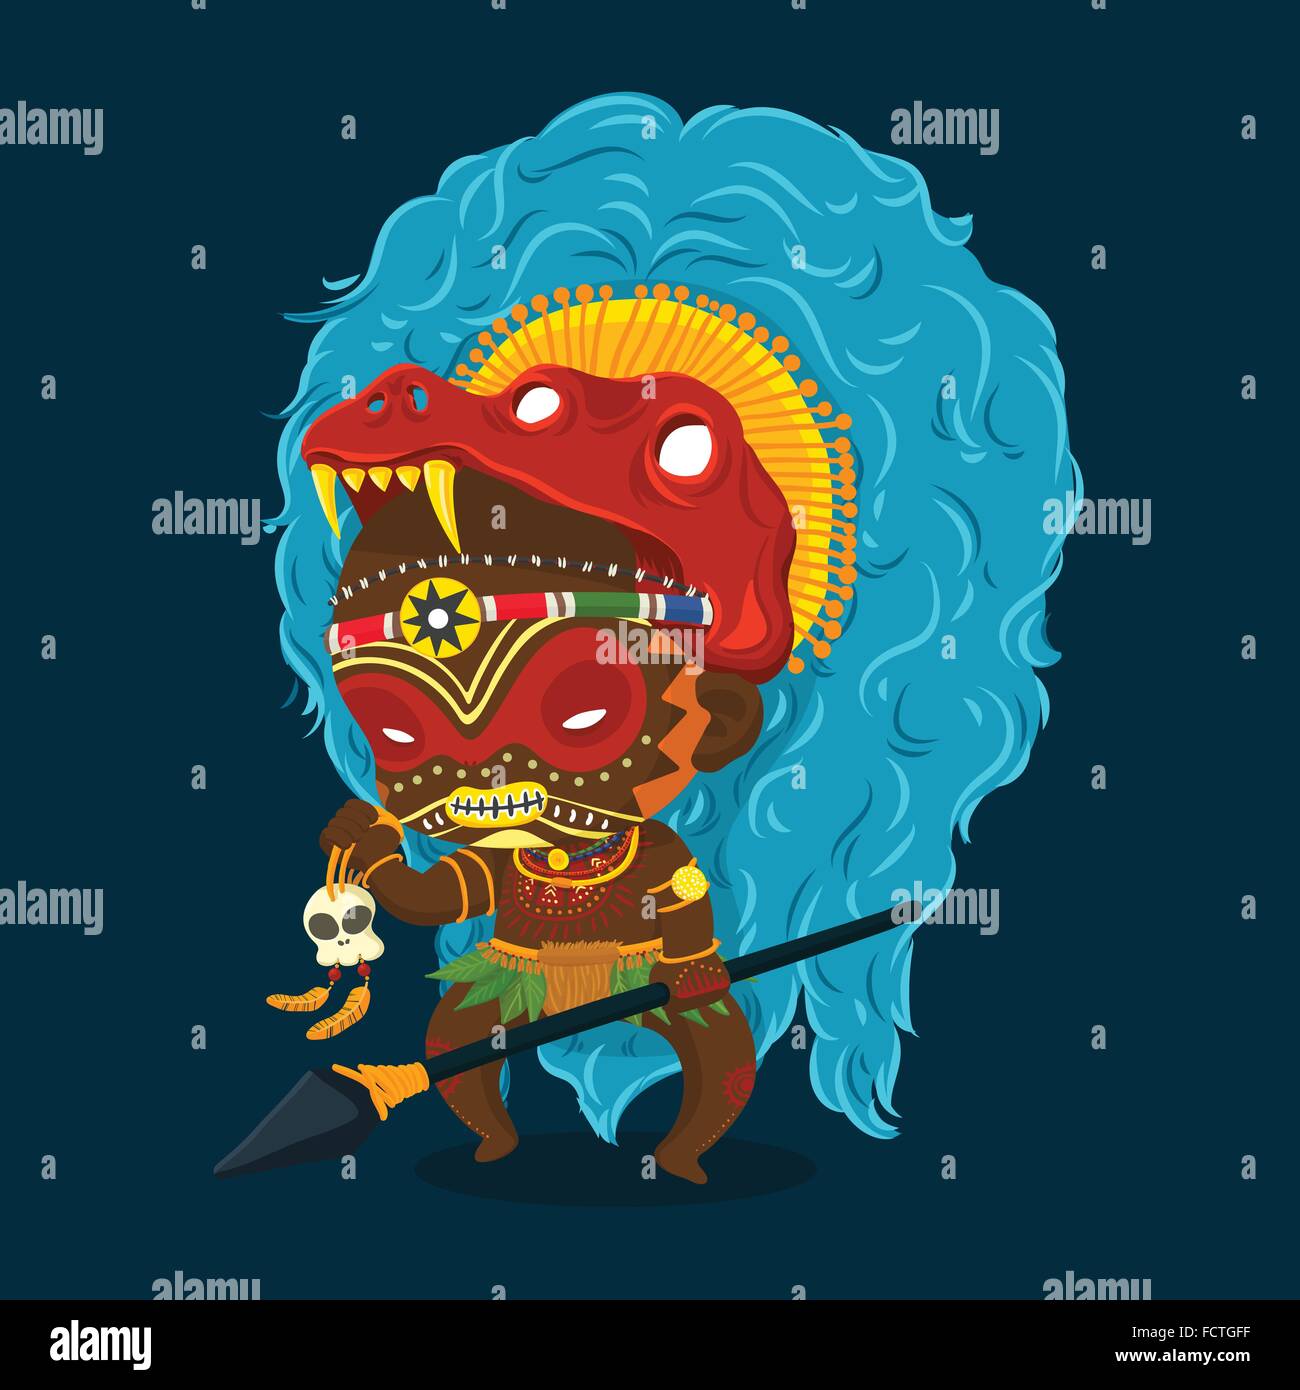 Illustrazione Vettoriale di tribù africana sciamano con lancia e cranio personaggio dei fumetti Illustrazione Vettoriale